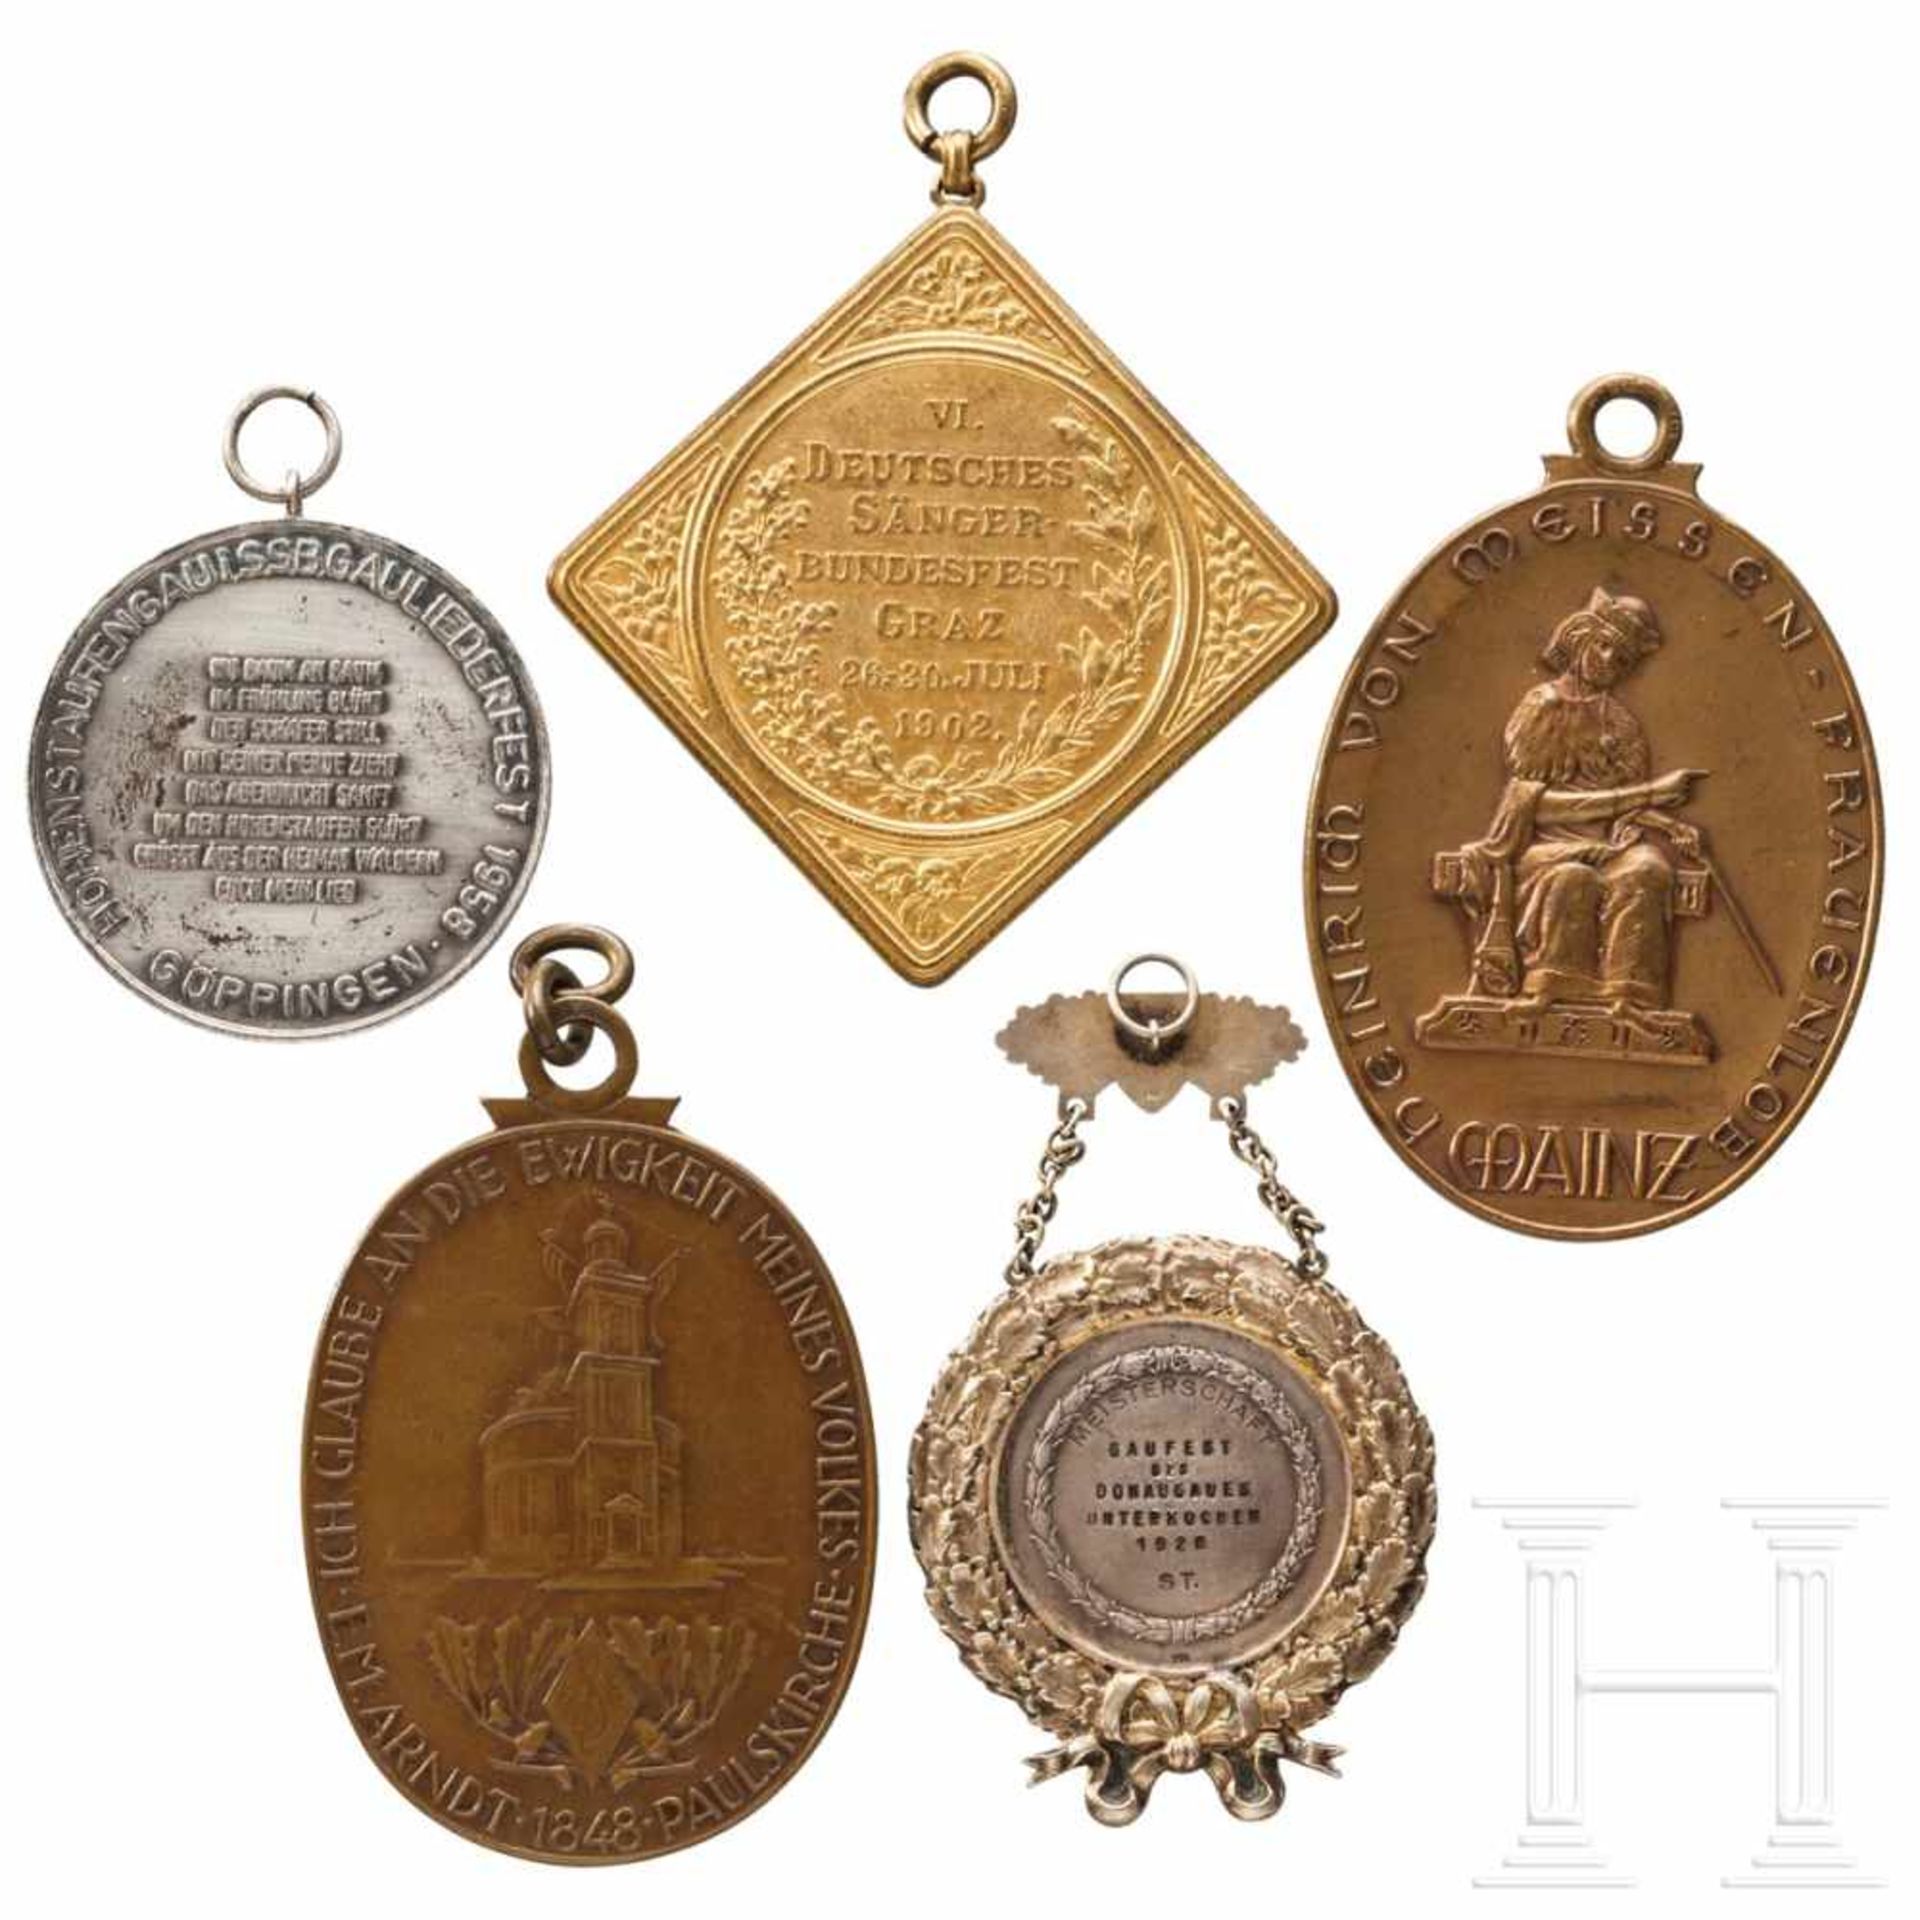 Fünf große Medaillen und Plaketten Deutscher Sänger-Bundesfeste - Bild 2 aus 4